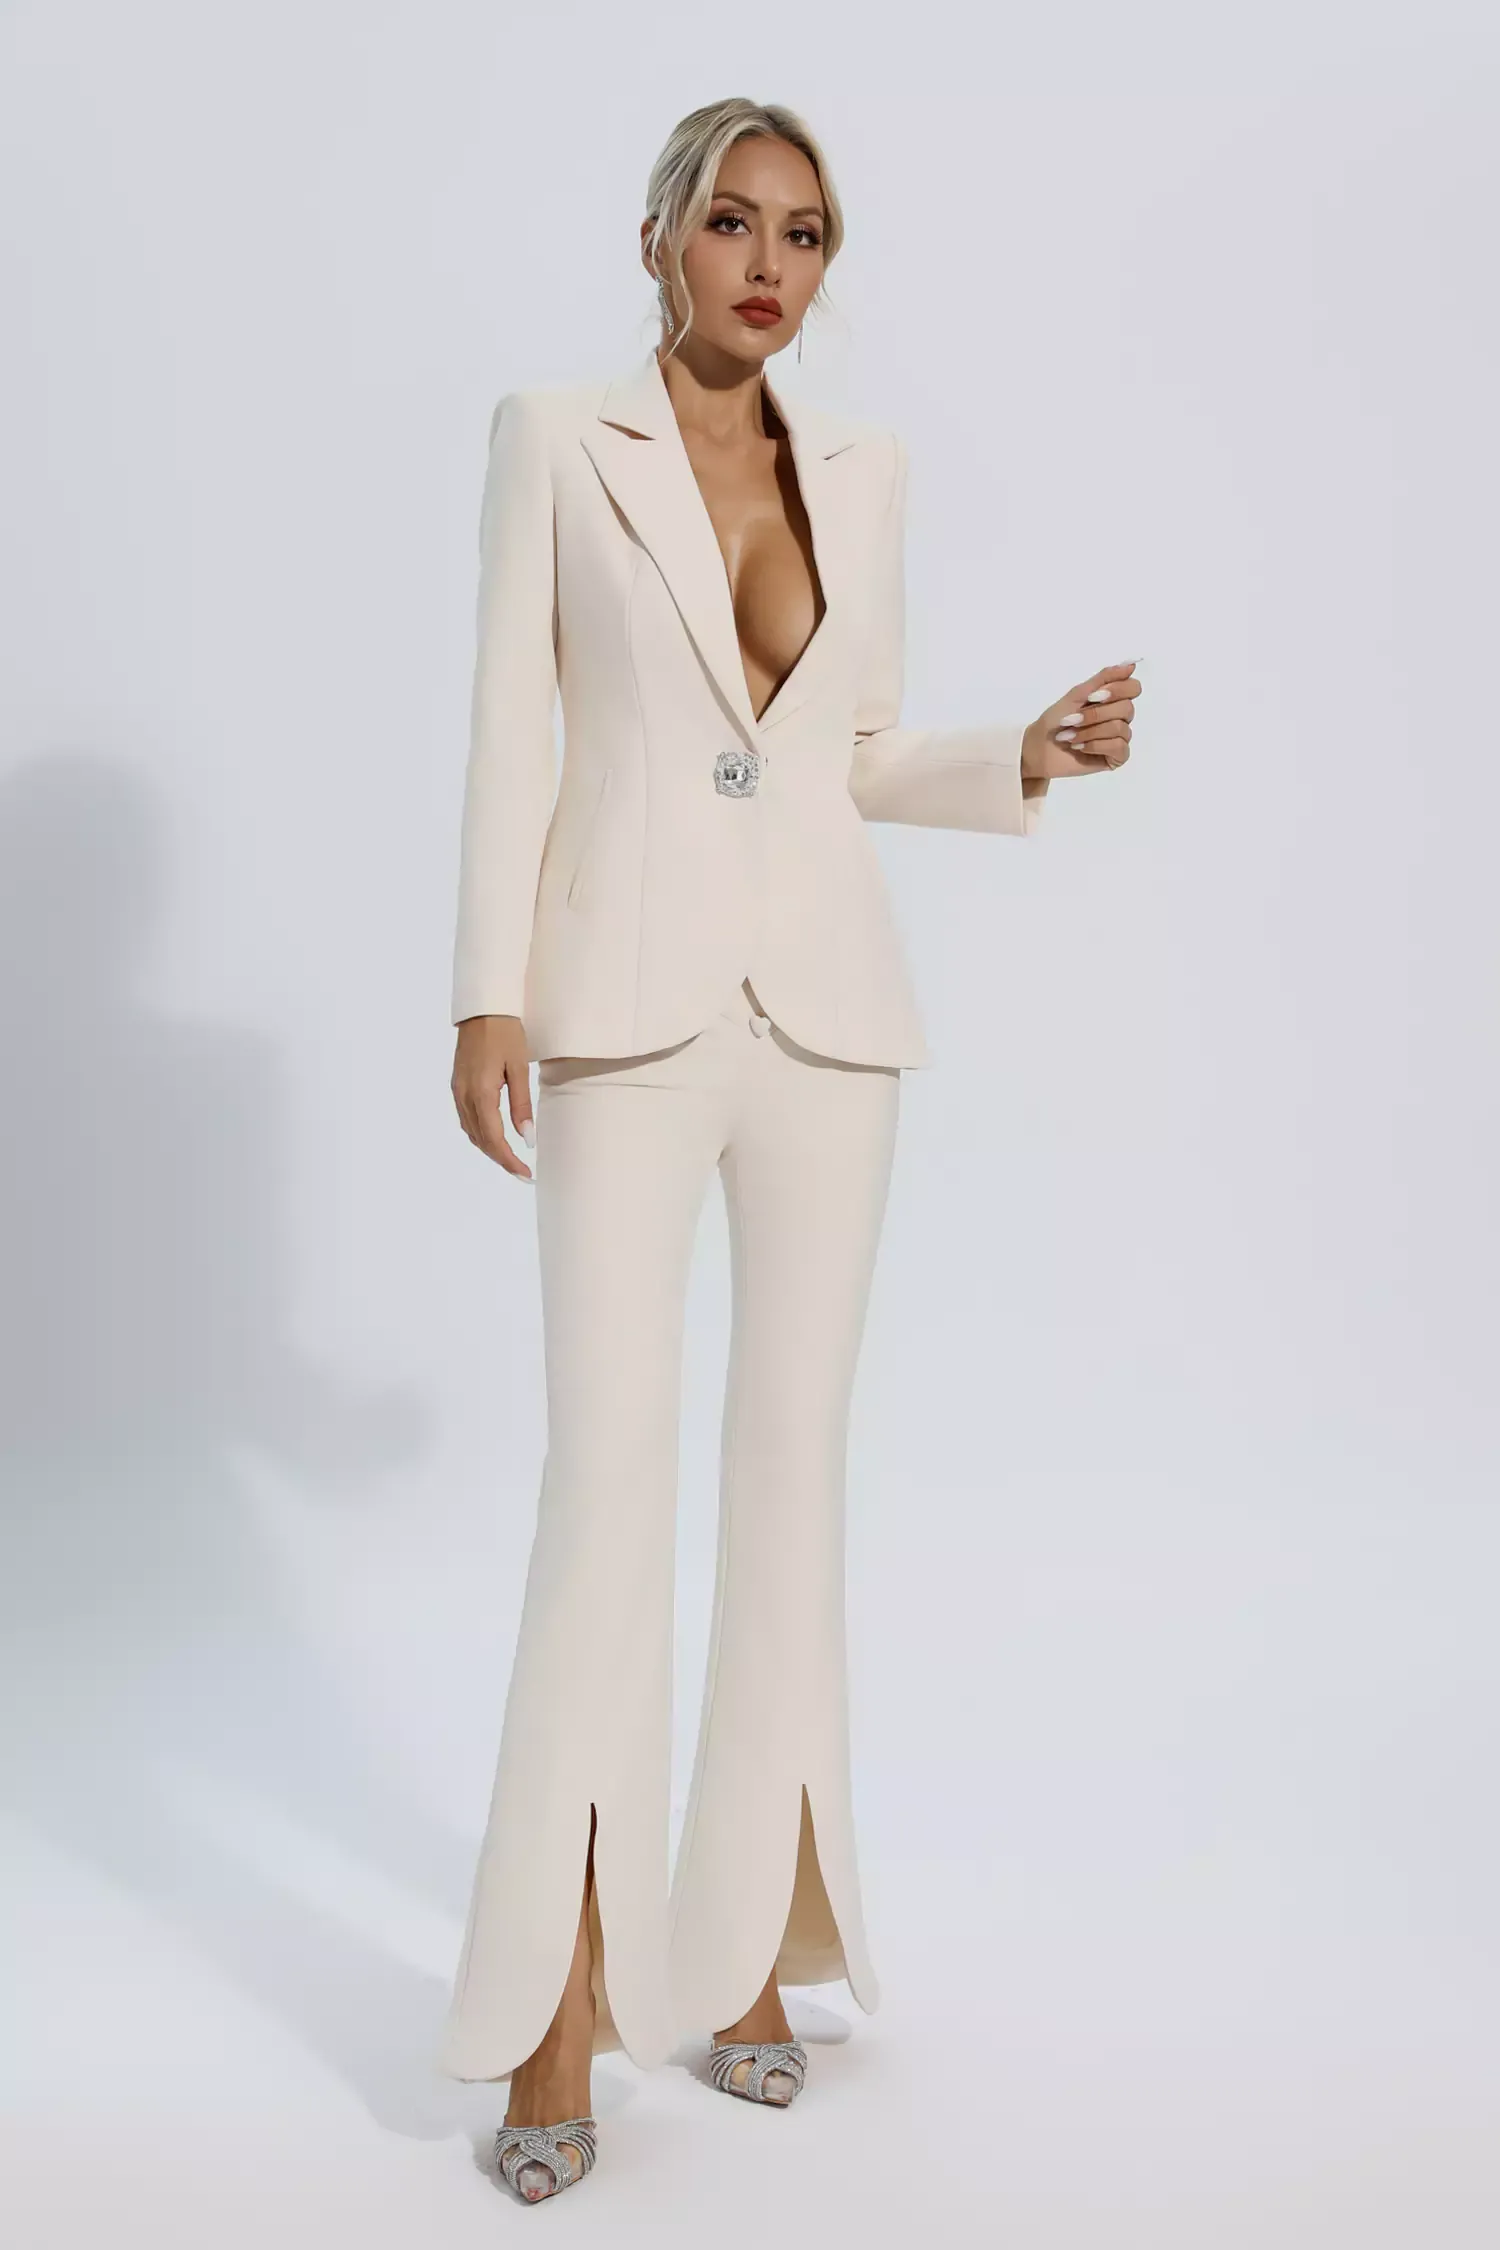 Mallory Ivory White Long Sleeve Blazer Set